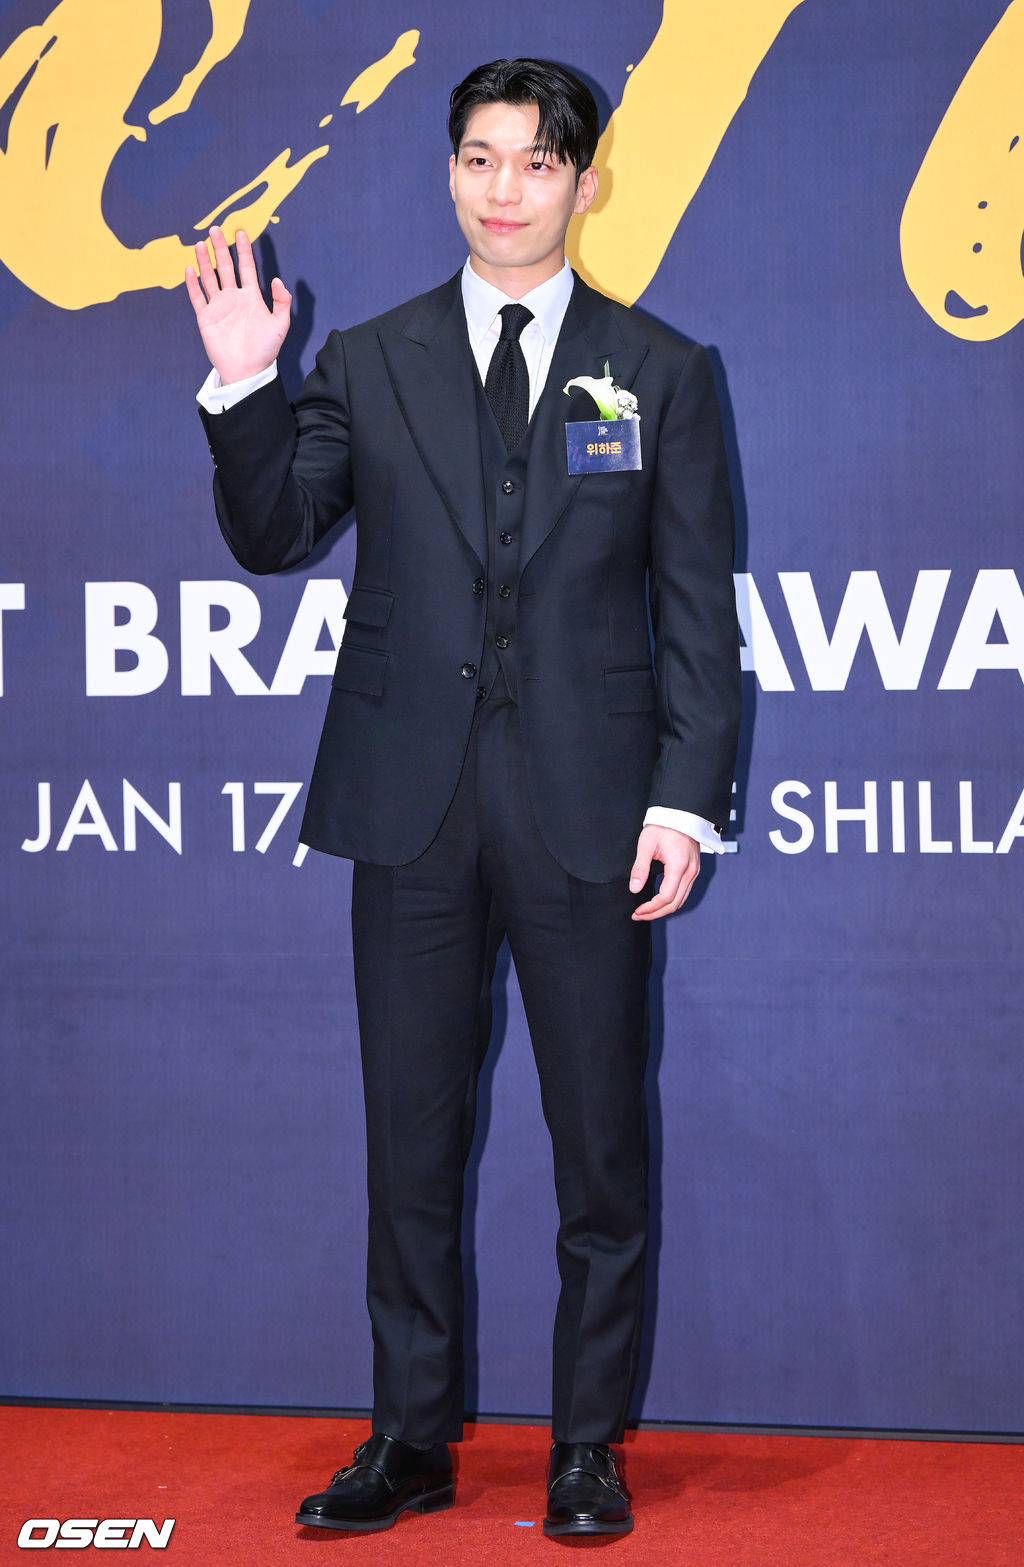 Thảm đỏ Korea First Brand Awards: Mỹ nam Squid Game đọ sắc cực gắt bên nam phụ Extraordinary Attorney Woo, nàng nắng xuân ngọt ngào dẫn đầu dàn mỹ nhân - Ảnh 2.